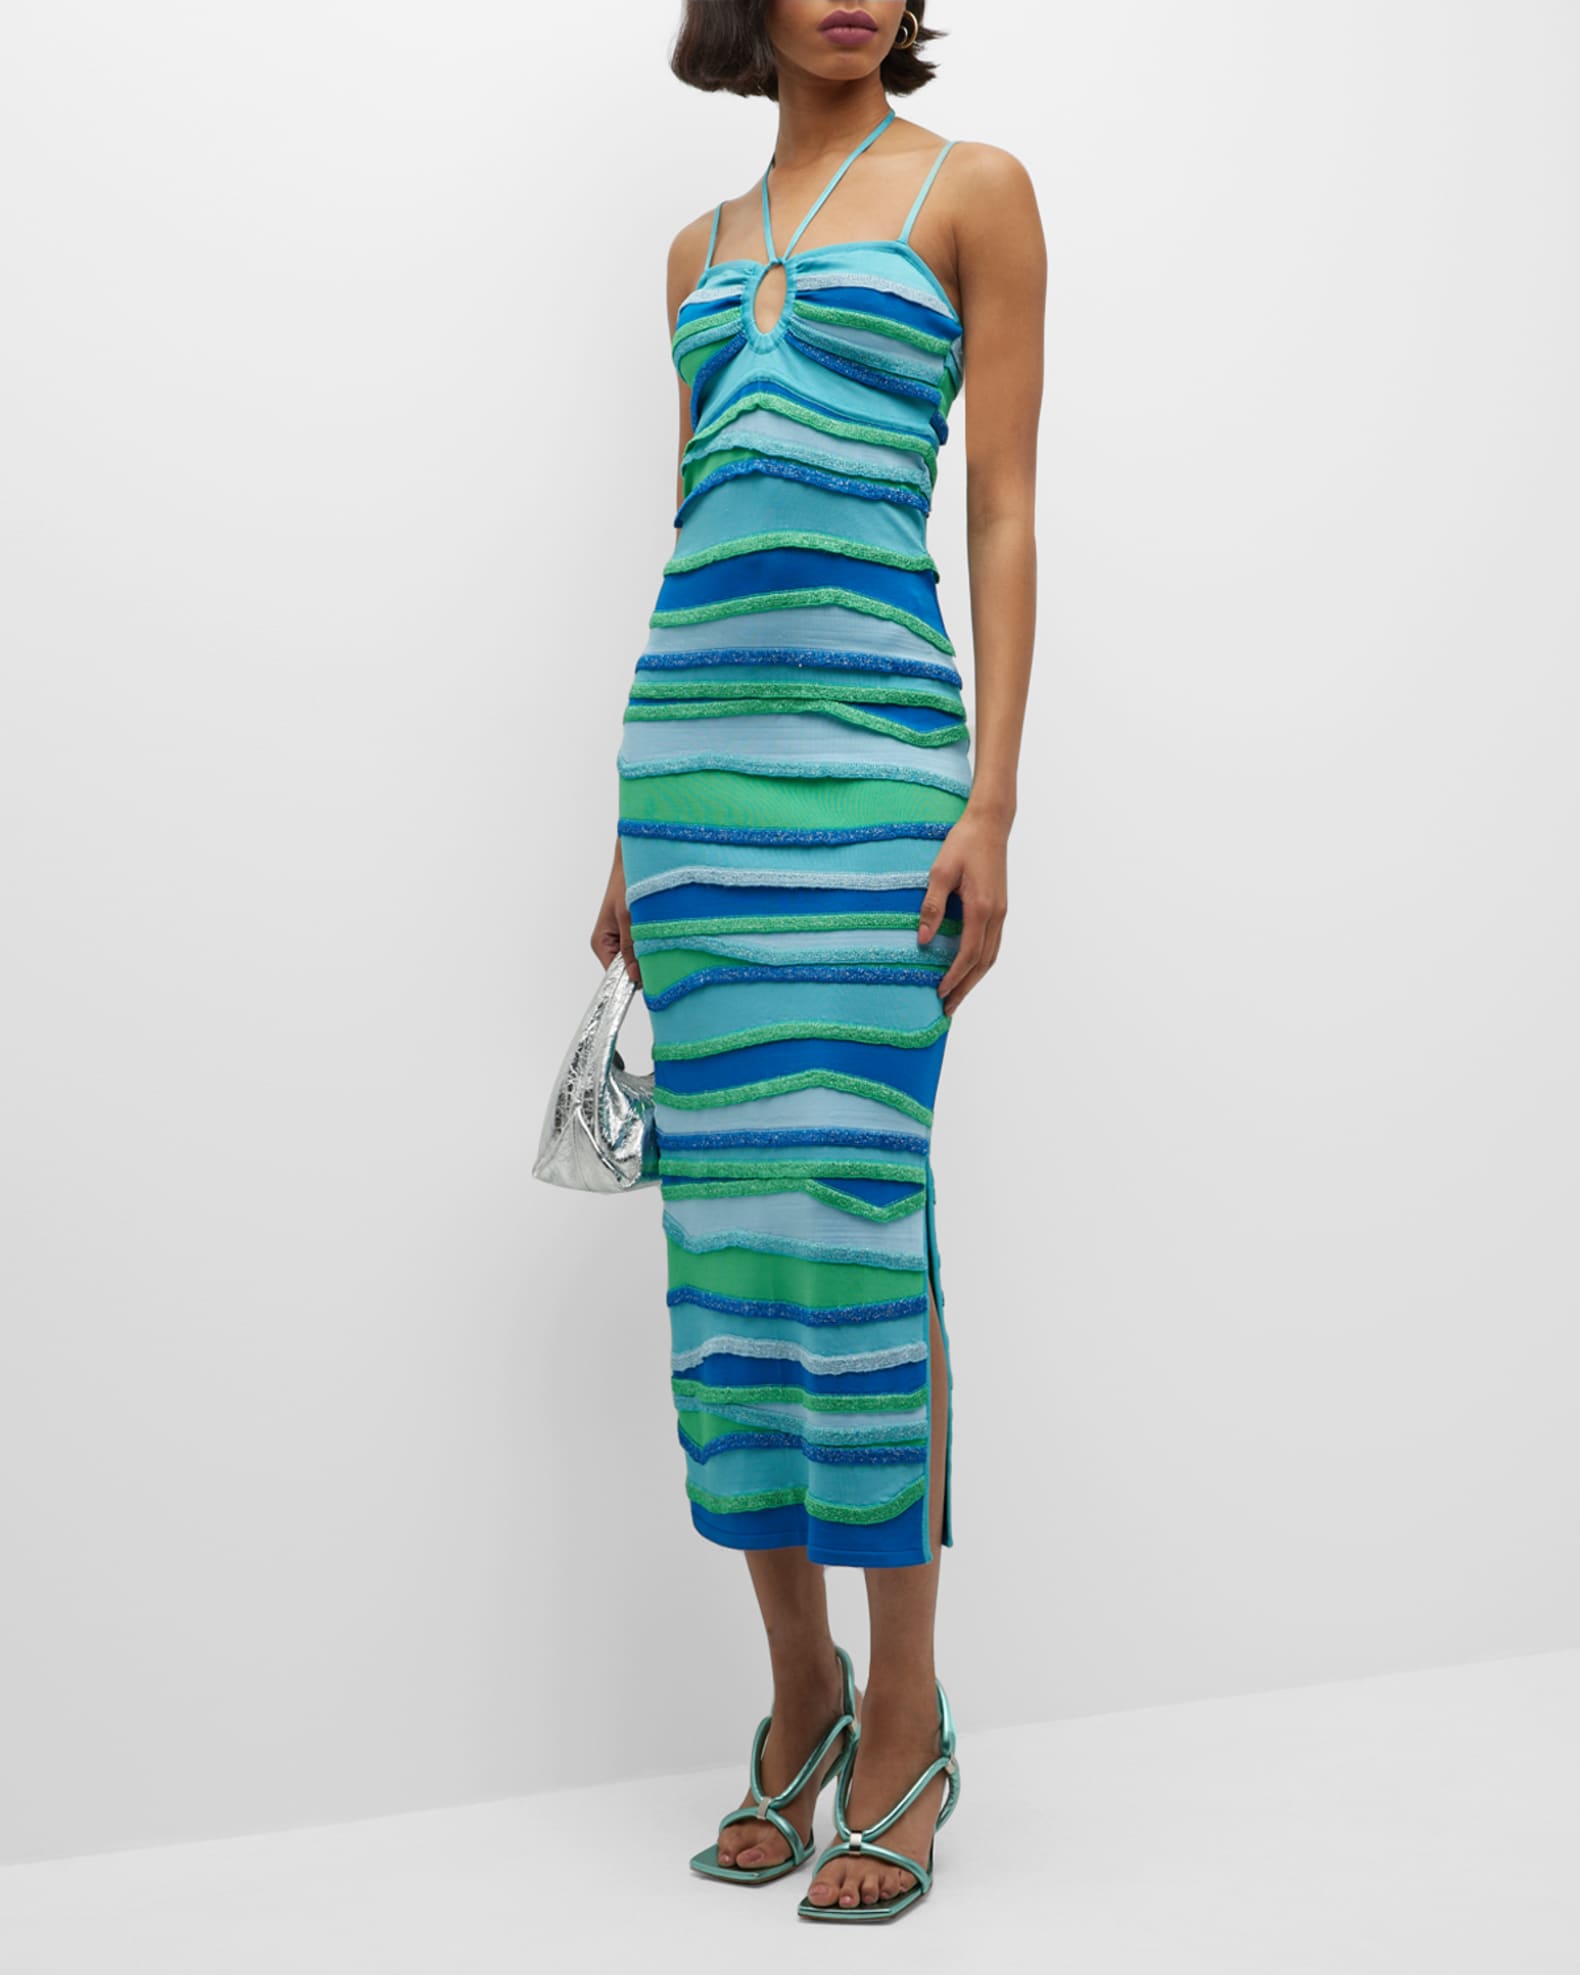 PAOLA BERNARDI Rebecca Strappy Striped Halter Midi Dress | Neiman Marcus